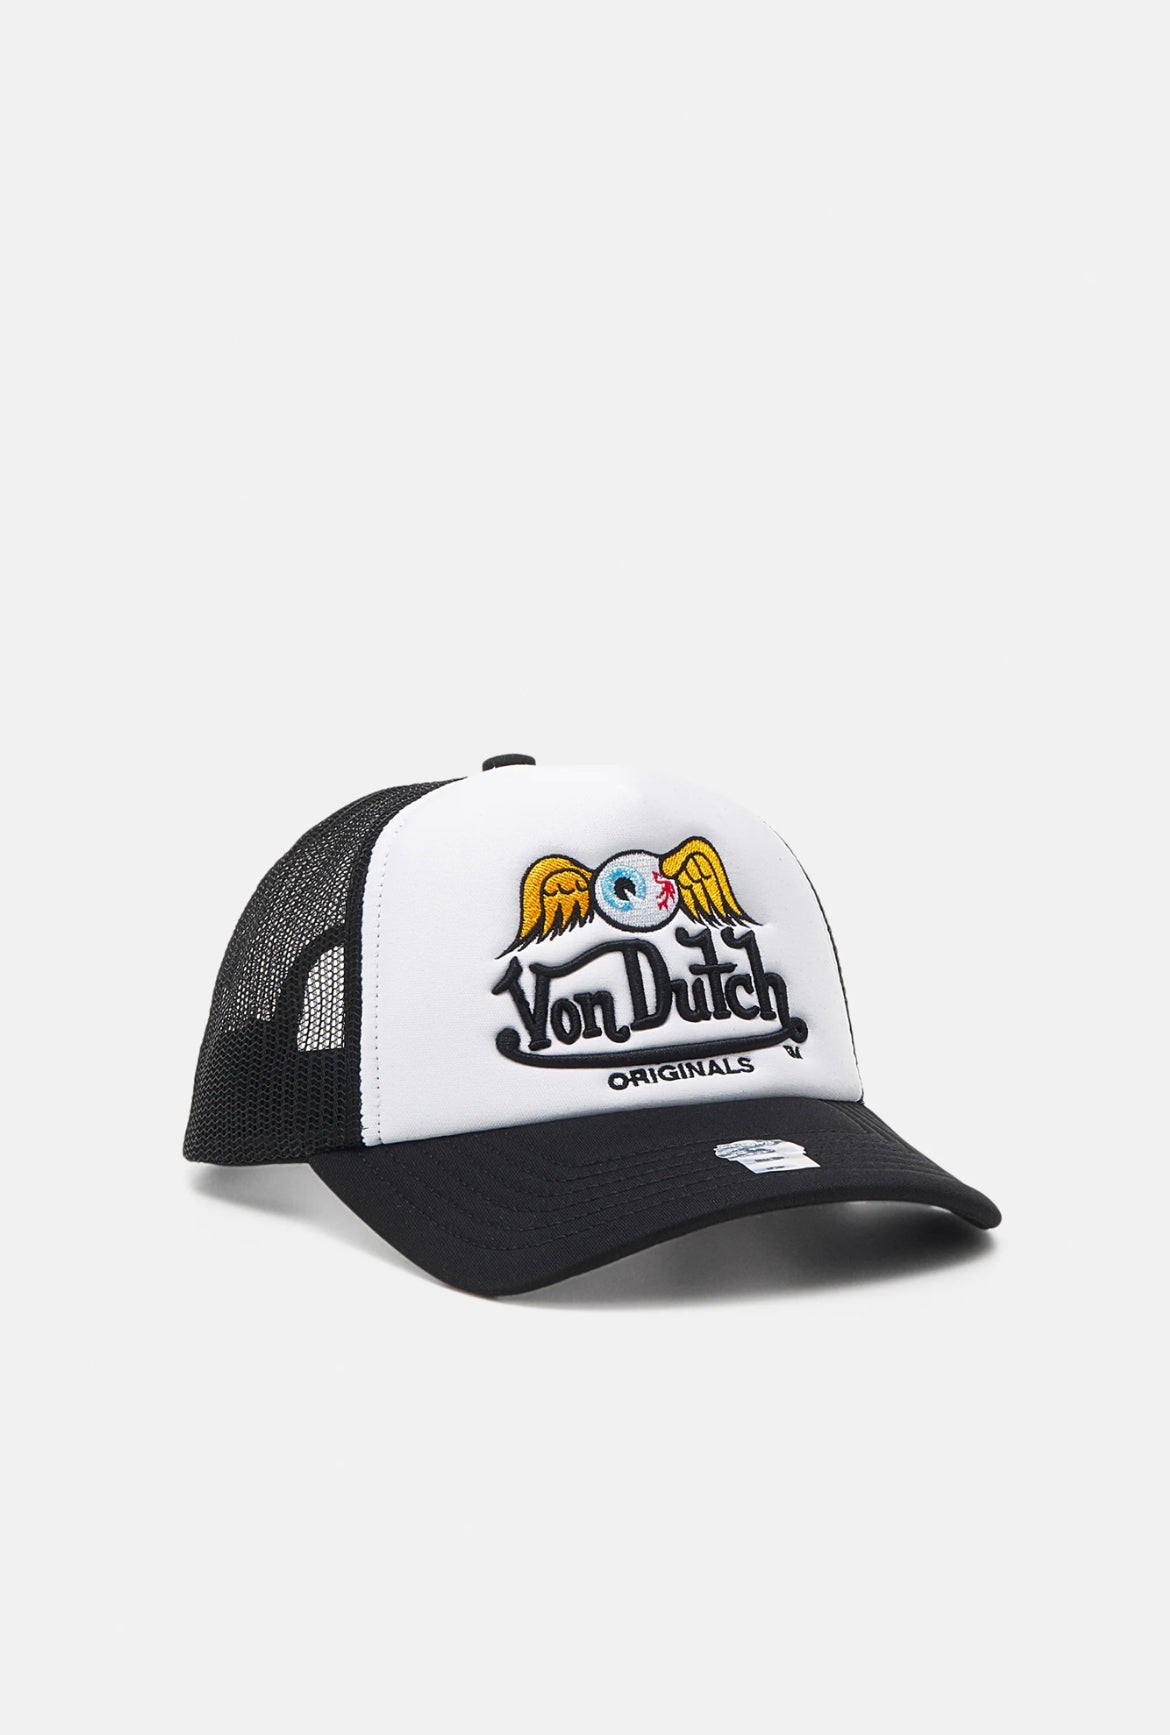 Von Dutch trucker baker cap